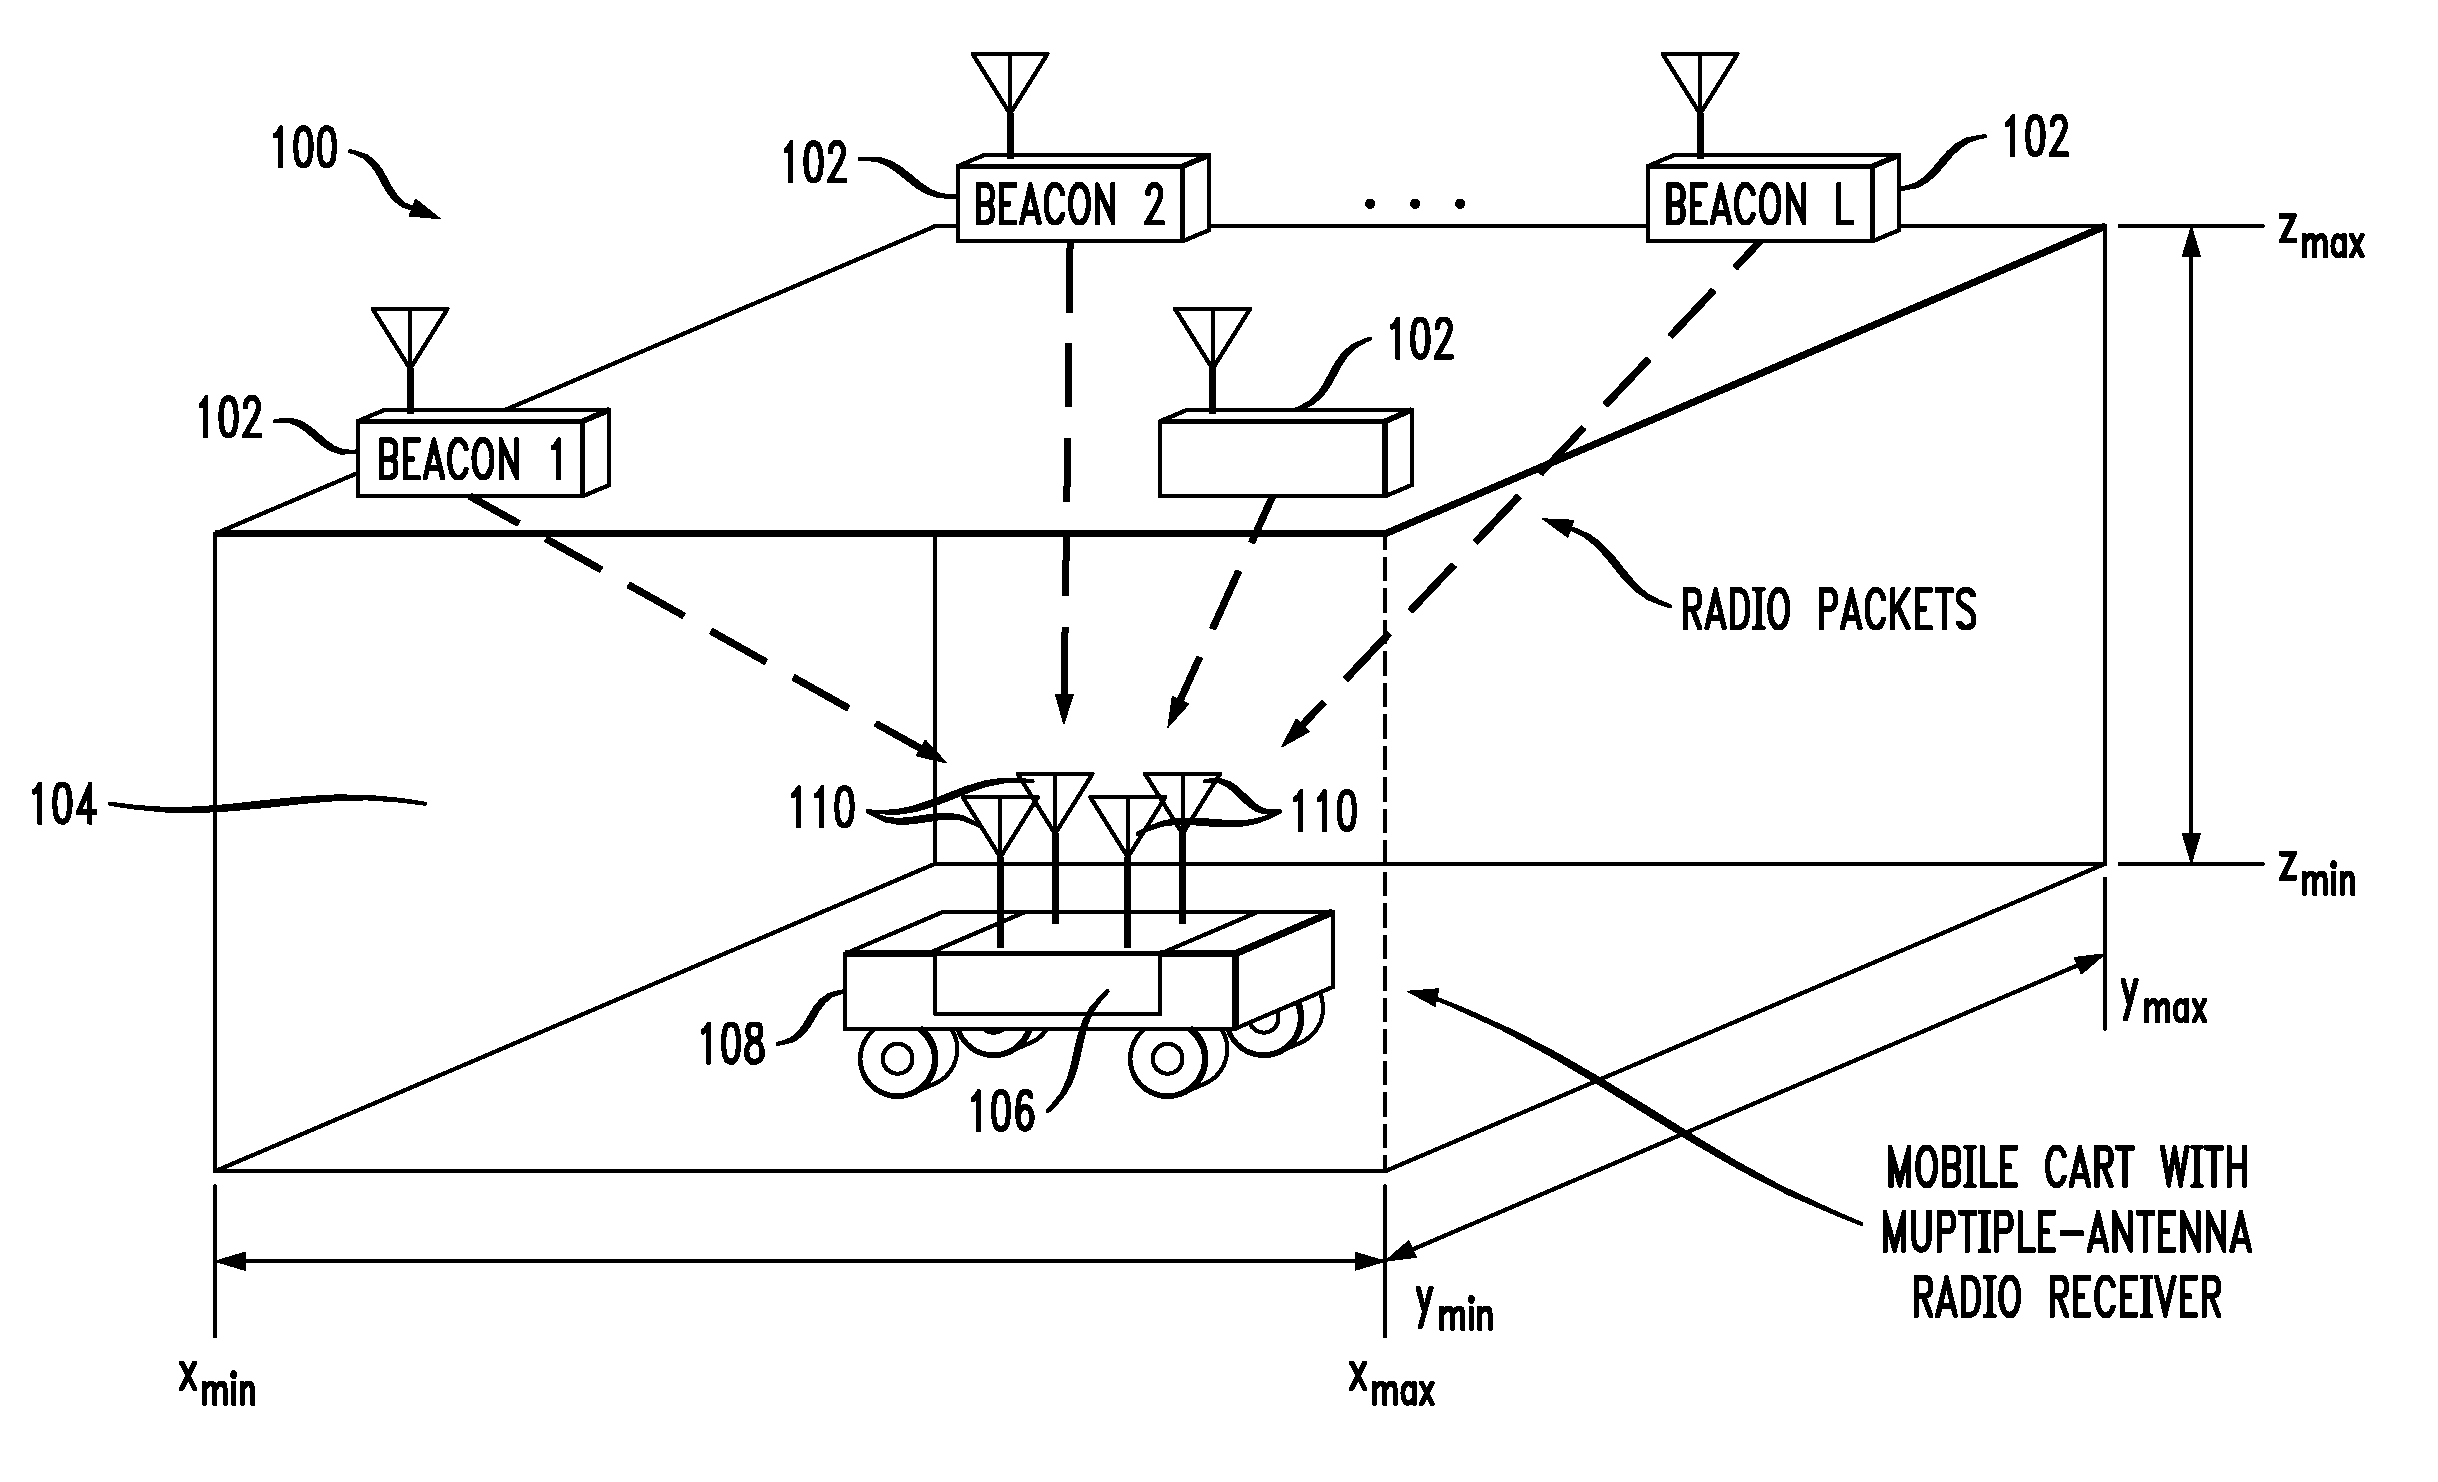 Estimating location using multi-antenna radio receiver